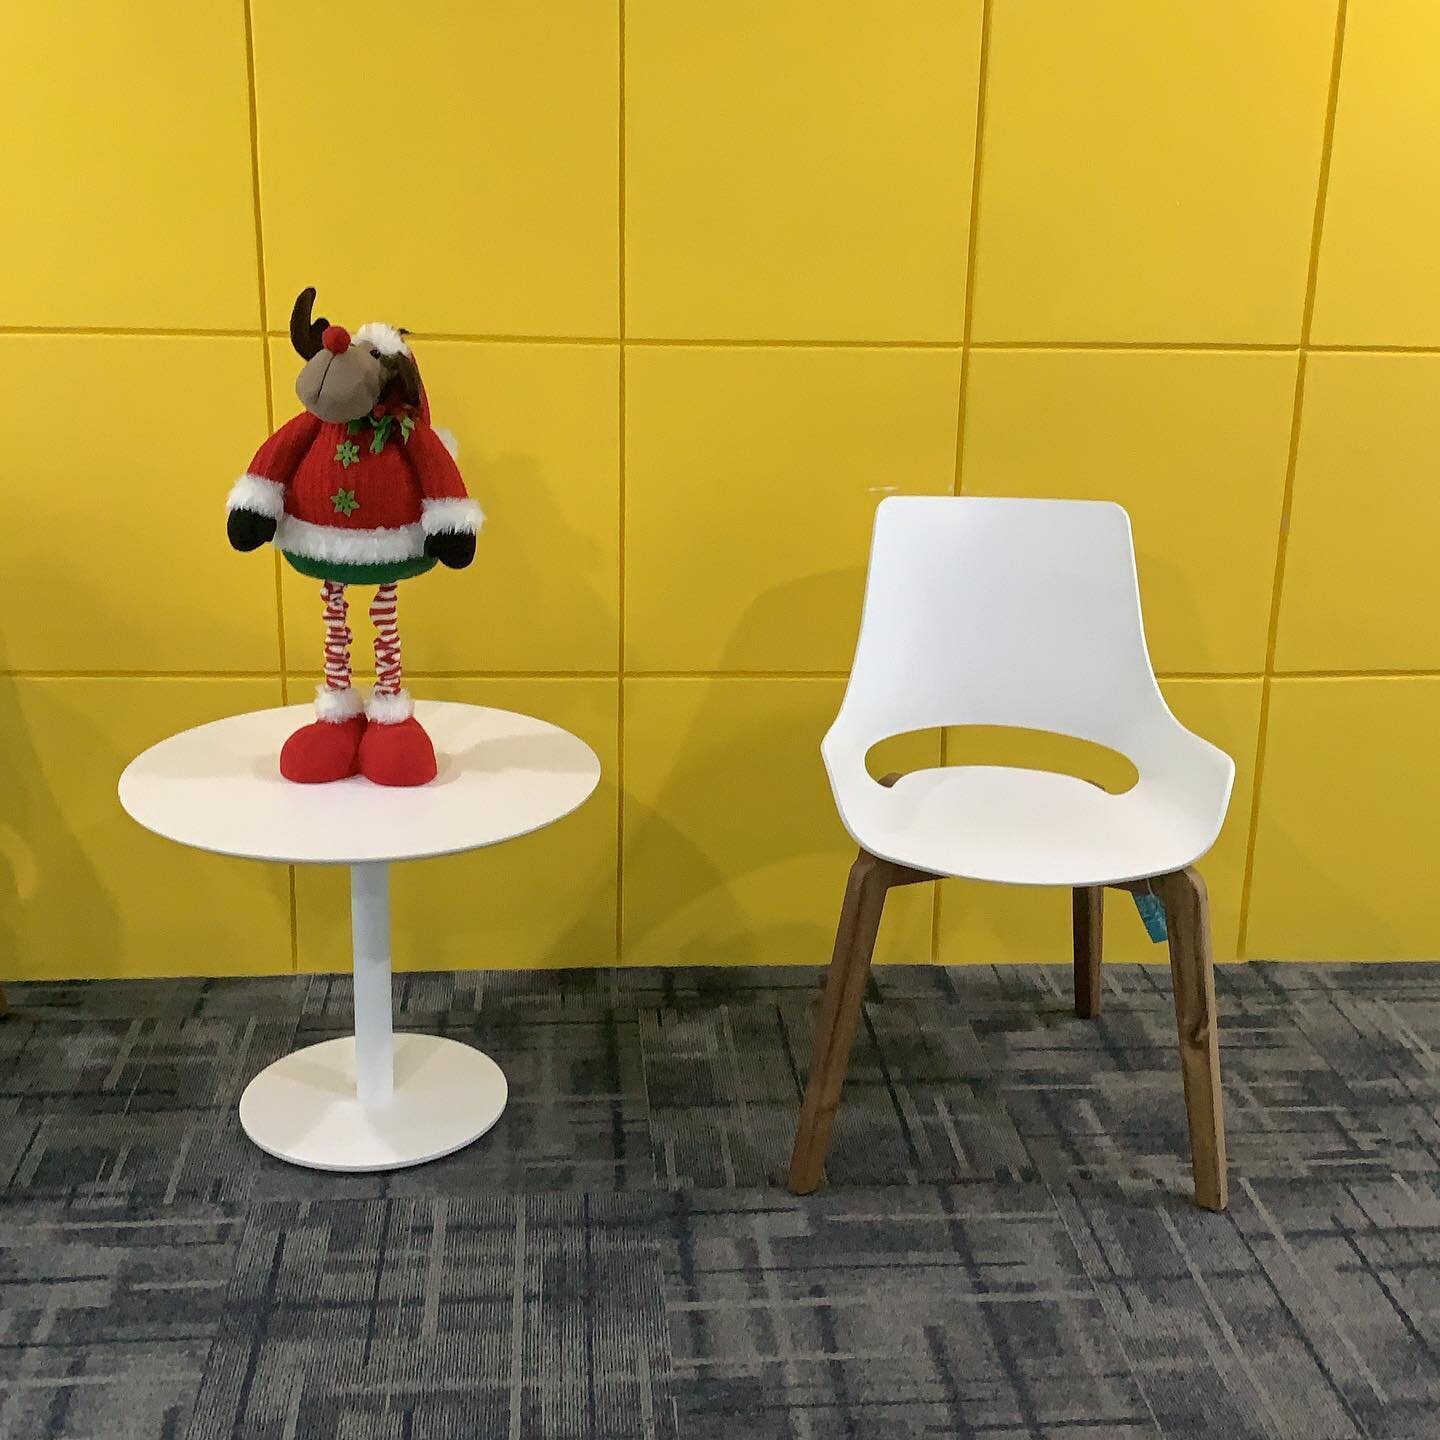 El reno de Papá Noel ya lleg&oacute; a recibir a nuestros miembros y visitantes! 

#coworking #workspace #cubicus #cafe